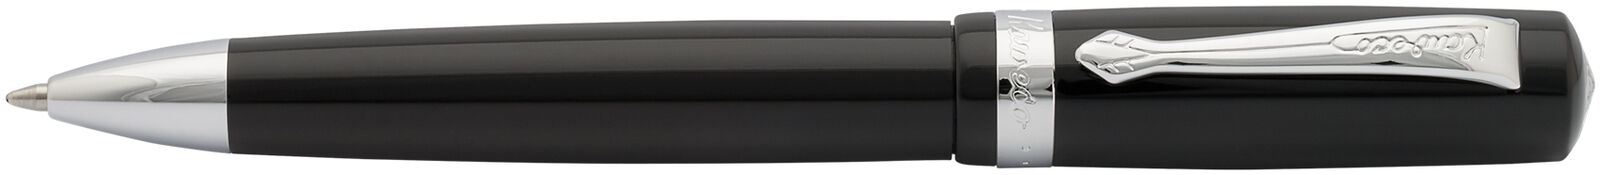 Шариковая ручка Kaweco STUDENT 1,0мм черный корпус с хромированными вставками